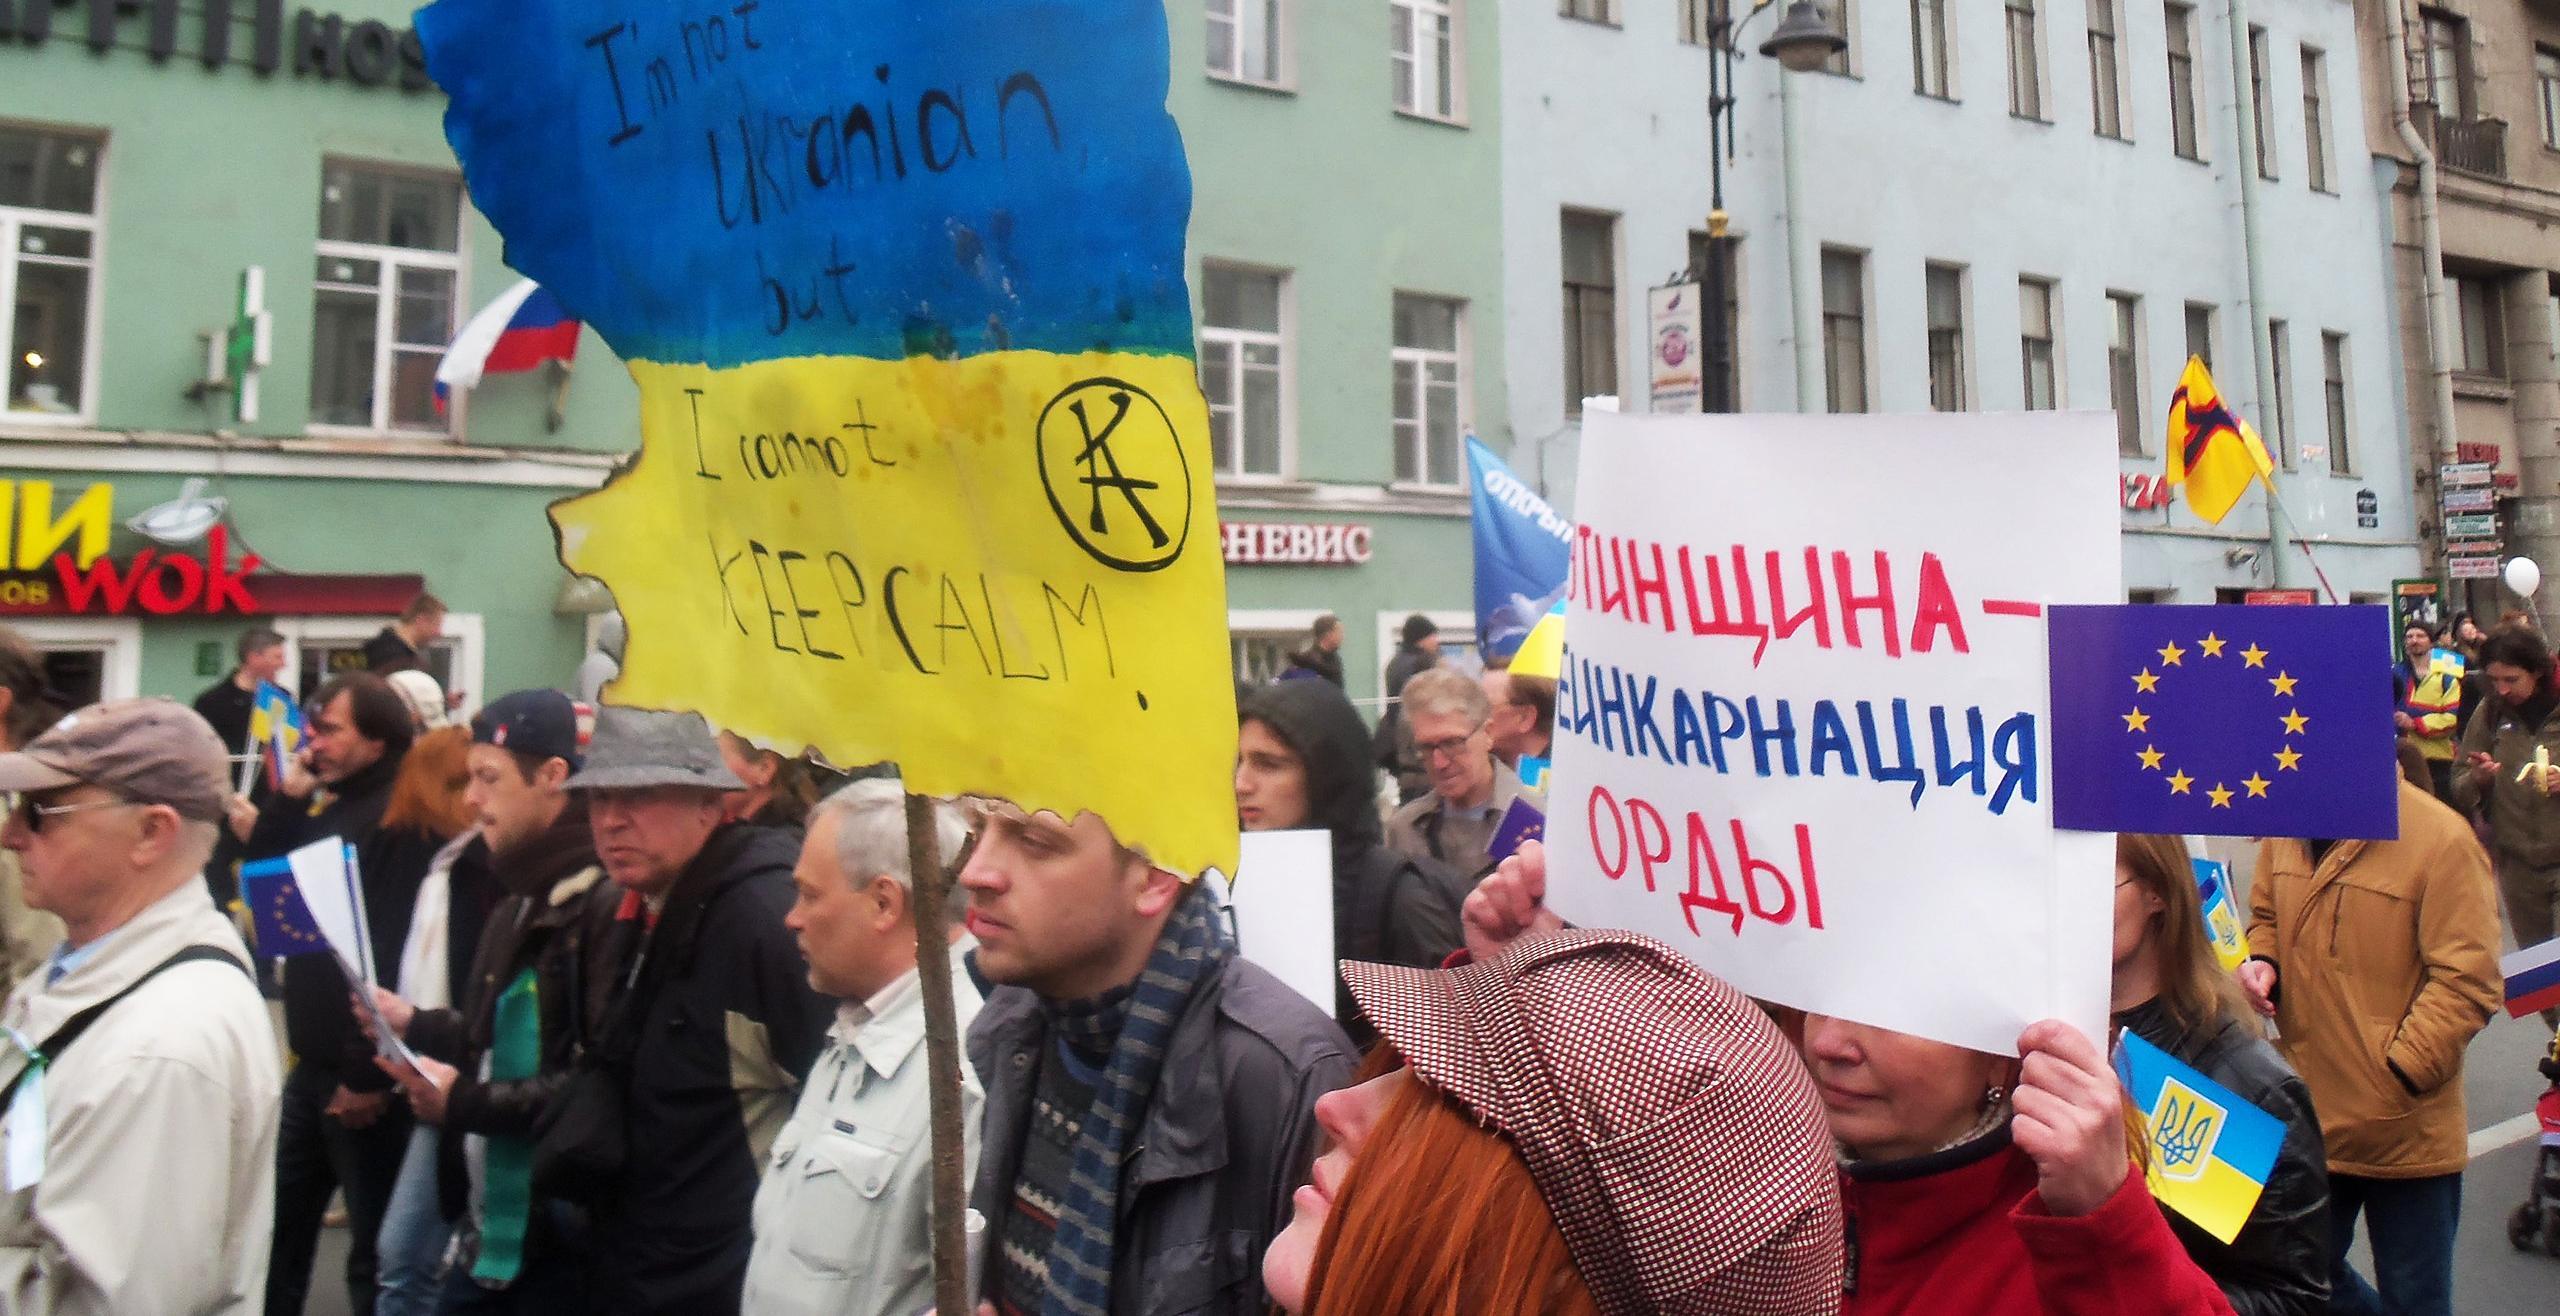 Een foto van de vredesbetoging in 2014. Op een plakkaat is te lezen 'Ik ben niet Oekrains, maar ik kan niet kalm blijven'.